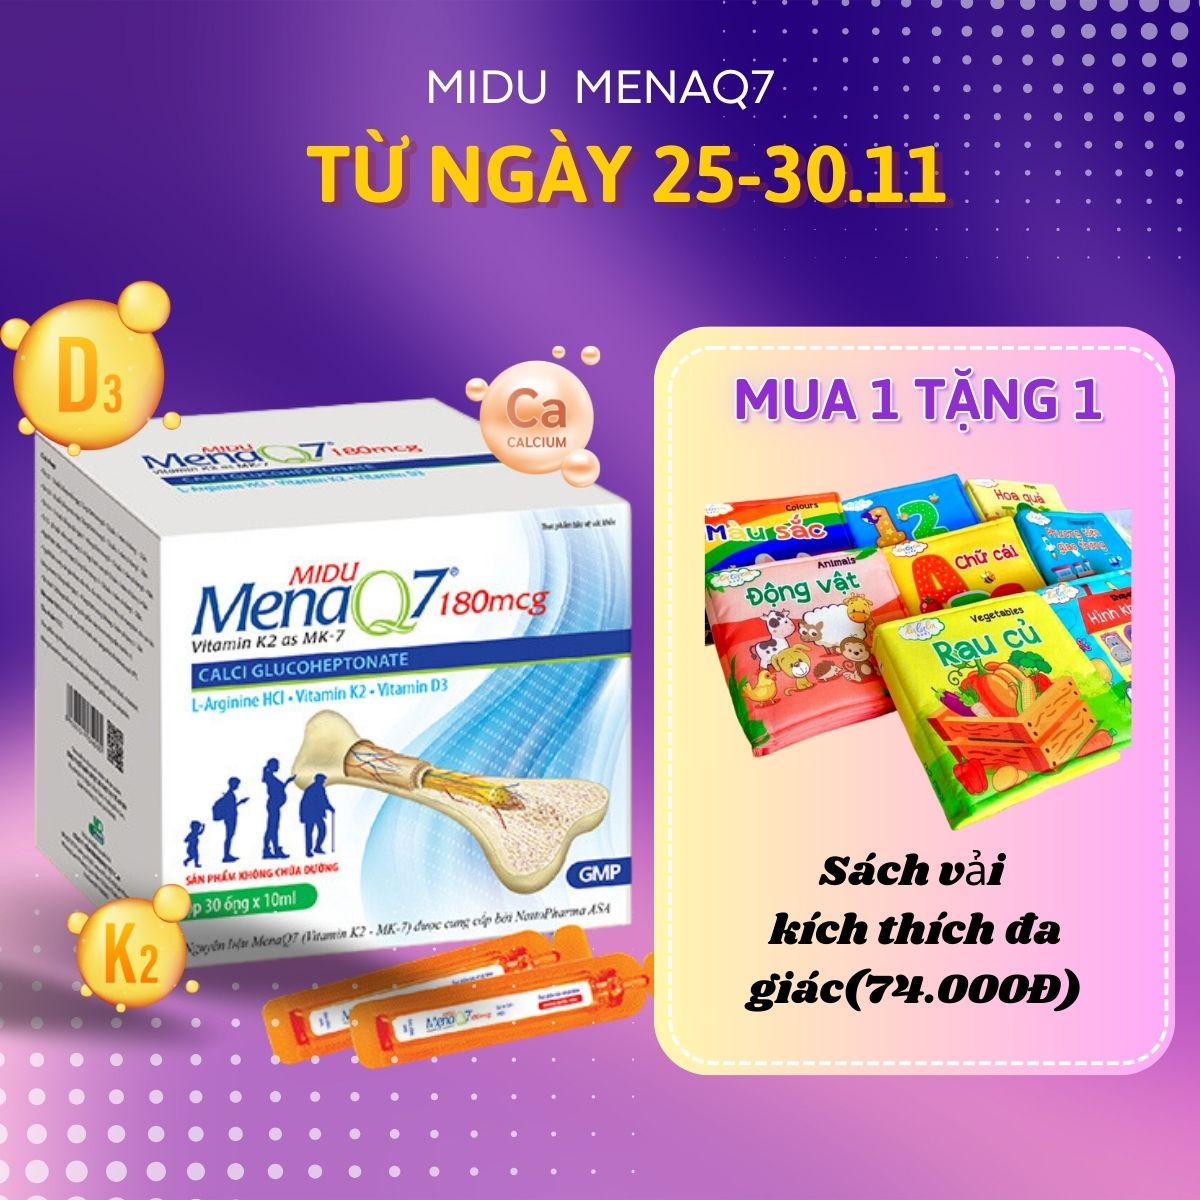 Midu MenaQ7 180mcg – Phát triển chiều cao cho trẻ em và giúp xương chắc, dài, dẻo từ trong bụng mẹ tới suốt cuộc đời